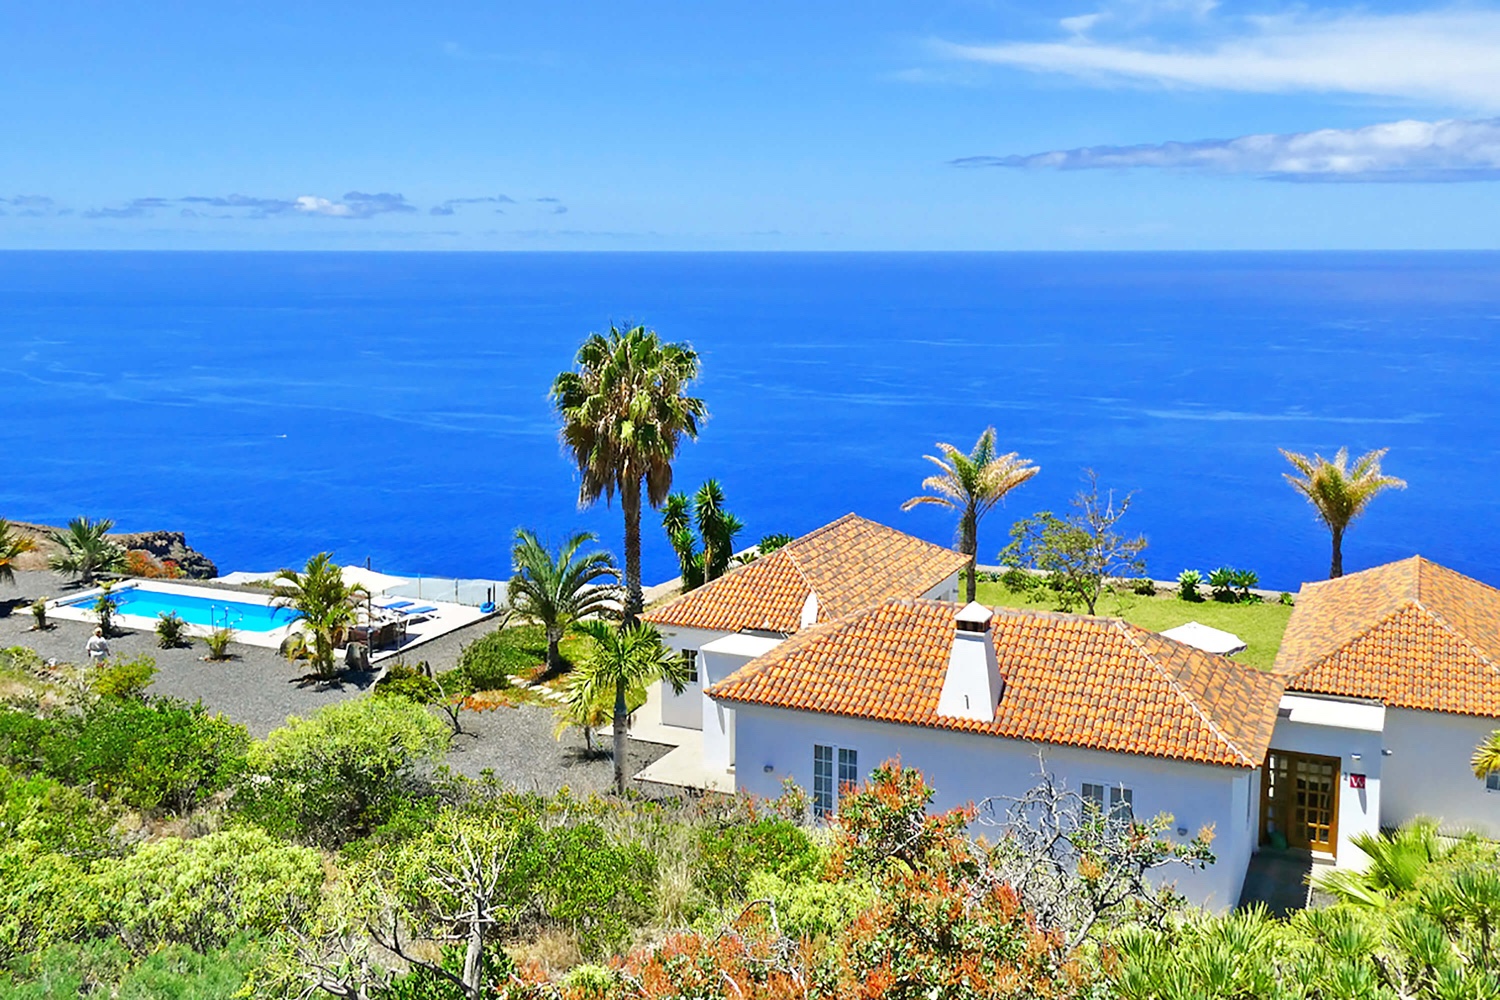 Erittäin mukava moderni talo, jossa on oma uima-allas ja upeat panoraamanäkymät Atlantin valtamerelle. Erittäin hyvin varusteltu loma-asunto on ihanteellinen loma La Palmassa kaikilla mukavuuksilla.